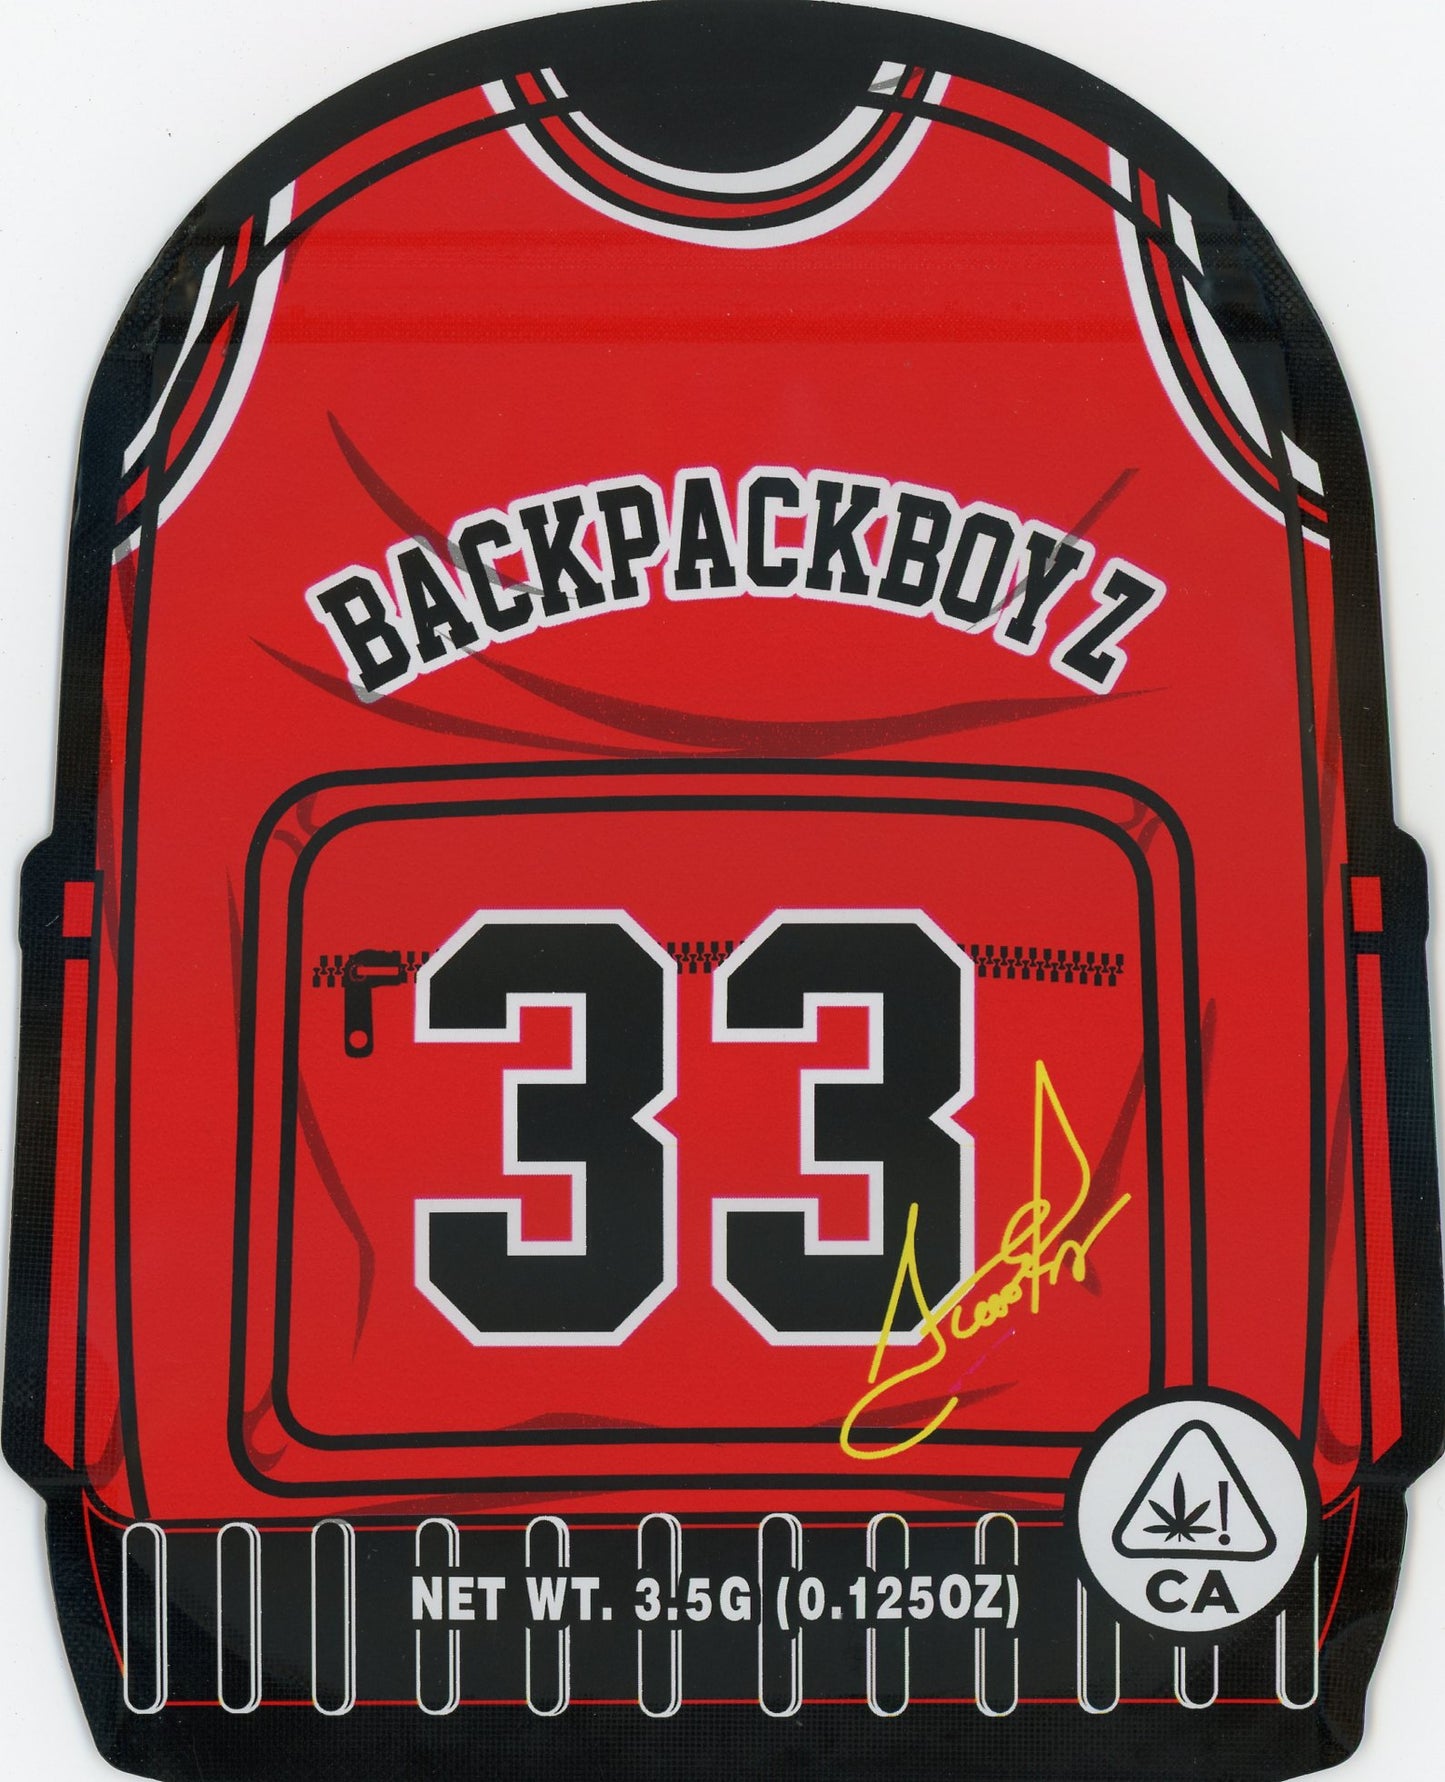 N33 Scottie Pippen Mylar Bags 3.5g Backpack Boyz 5 Points LA Die-Cut Mylar Bag